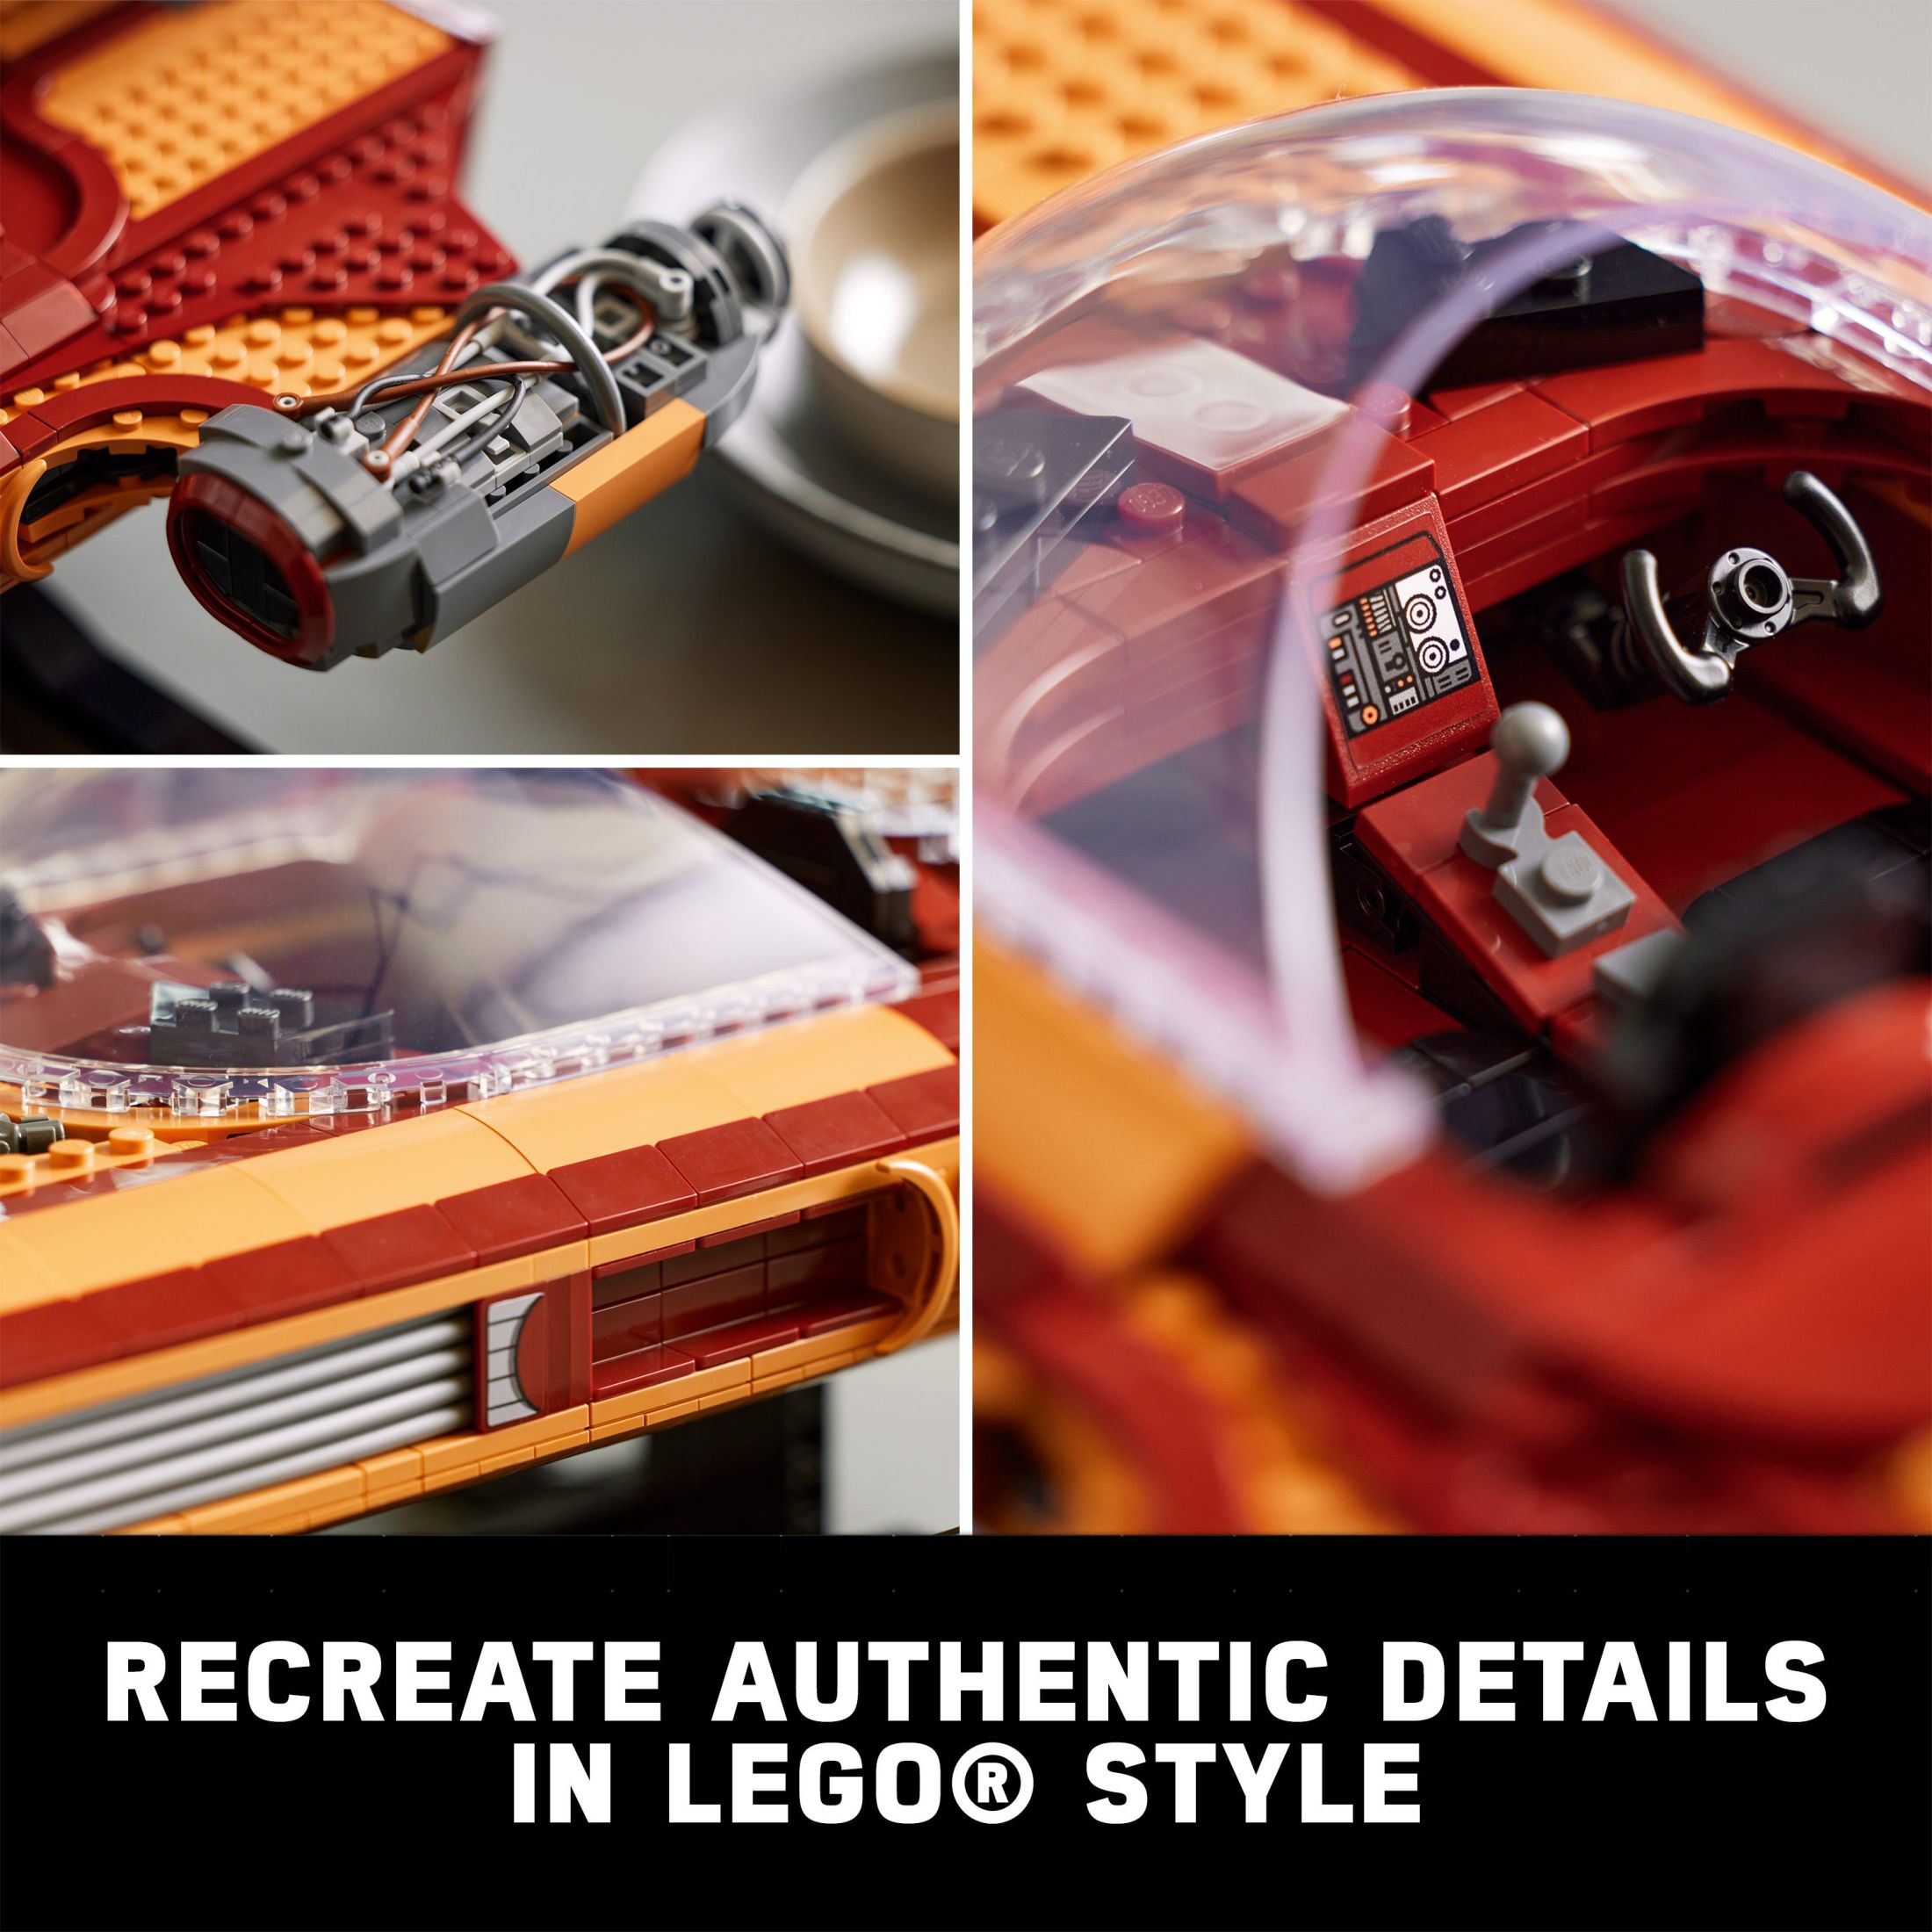 LEGO Star Wars Luke Skywalker's Landspeeder 75341, Ultimate Collector Series Star Wars Building Kit for Adults, Includes Luke Skywalker Lightsaber and C-3PO Mini Figure, Gift Idea for Star Wars Fans - image 5 of 8